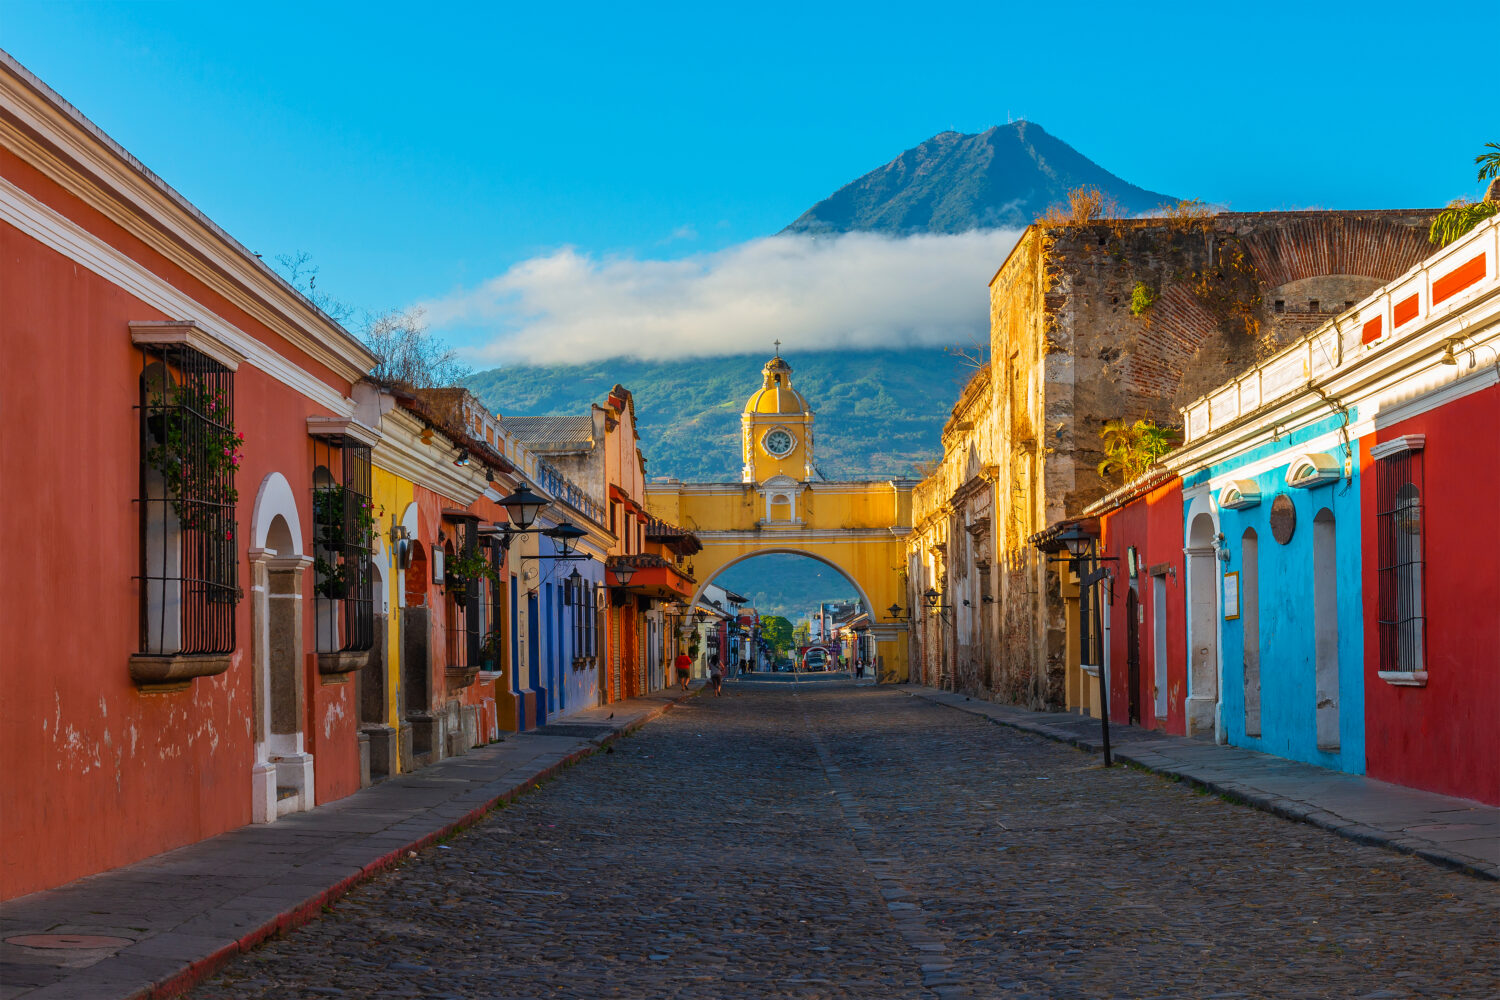 Paesaggio urbano della strada principale e arco giallo di Santa Catalina nel centro storico della città di Antigua all'alba con il vulcano Agua, Guatemala.